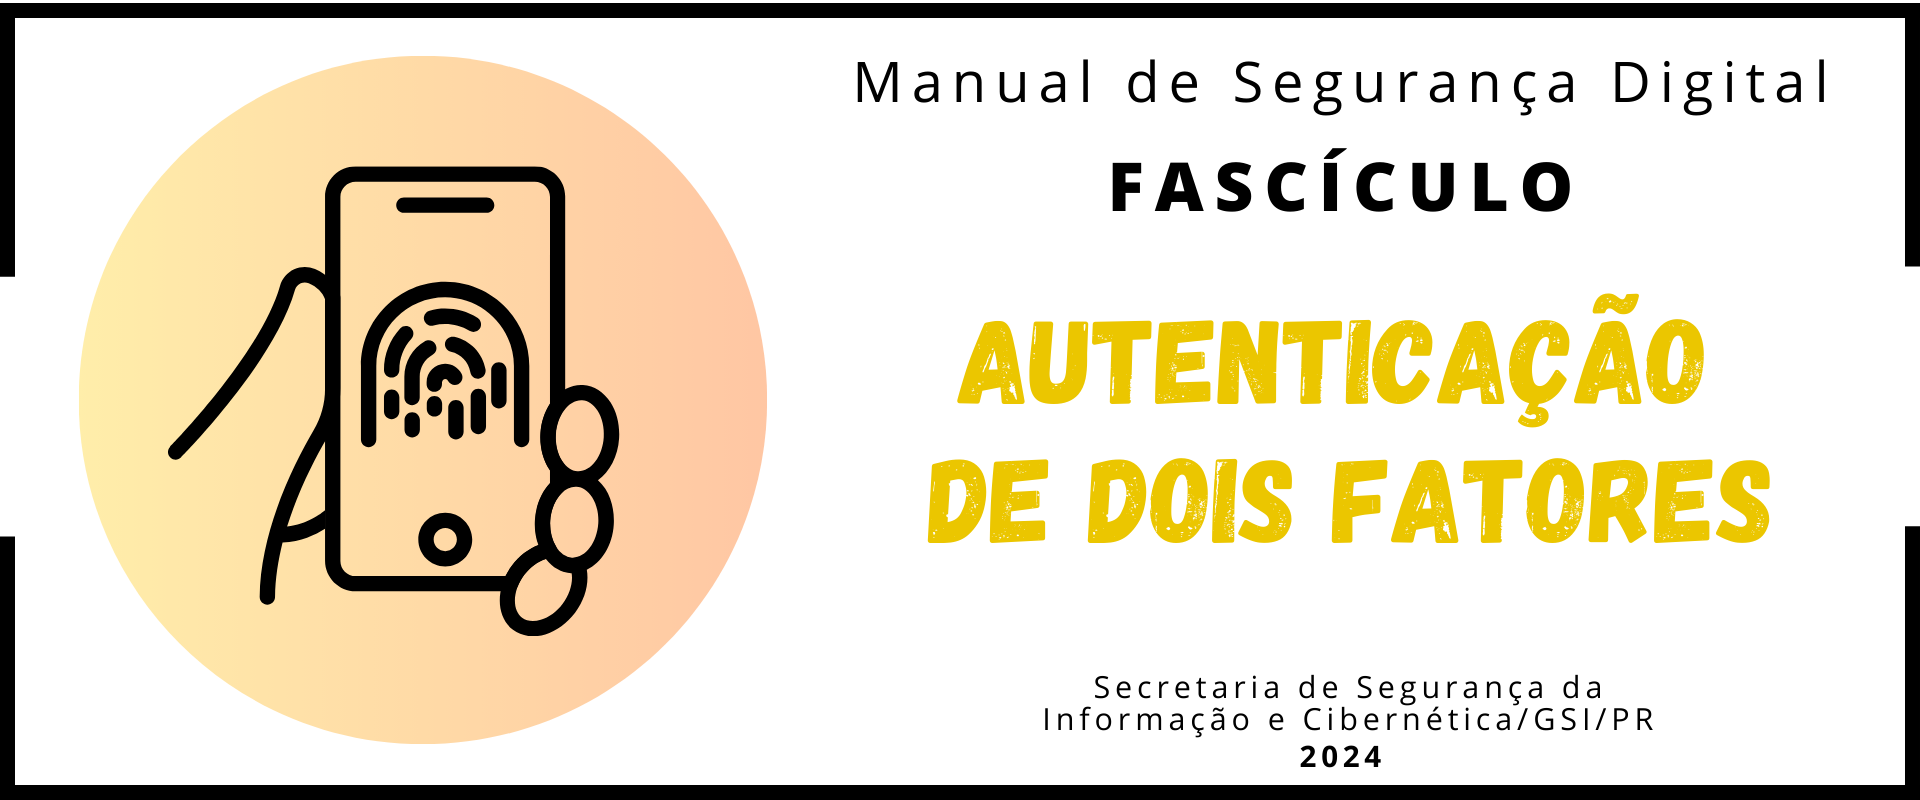 Banner Fascículo_atenticação_2FA.png